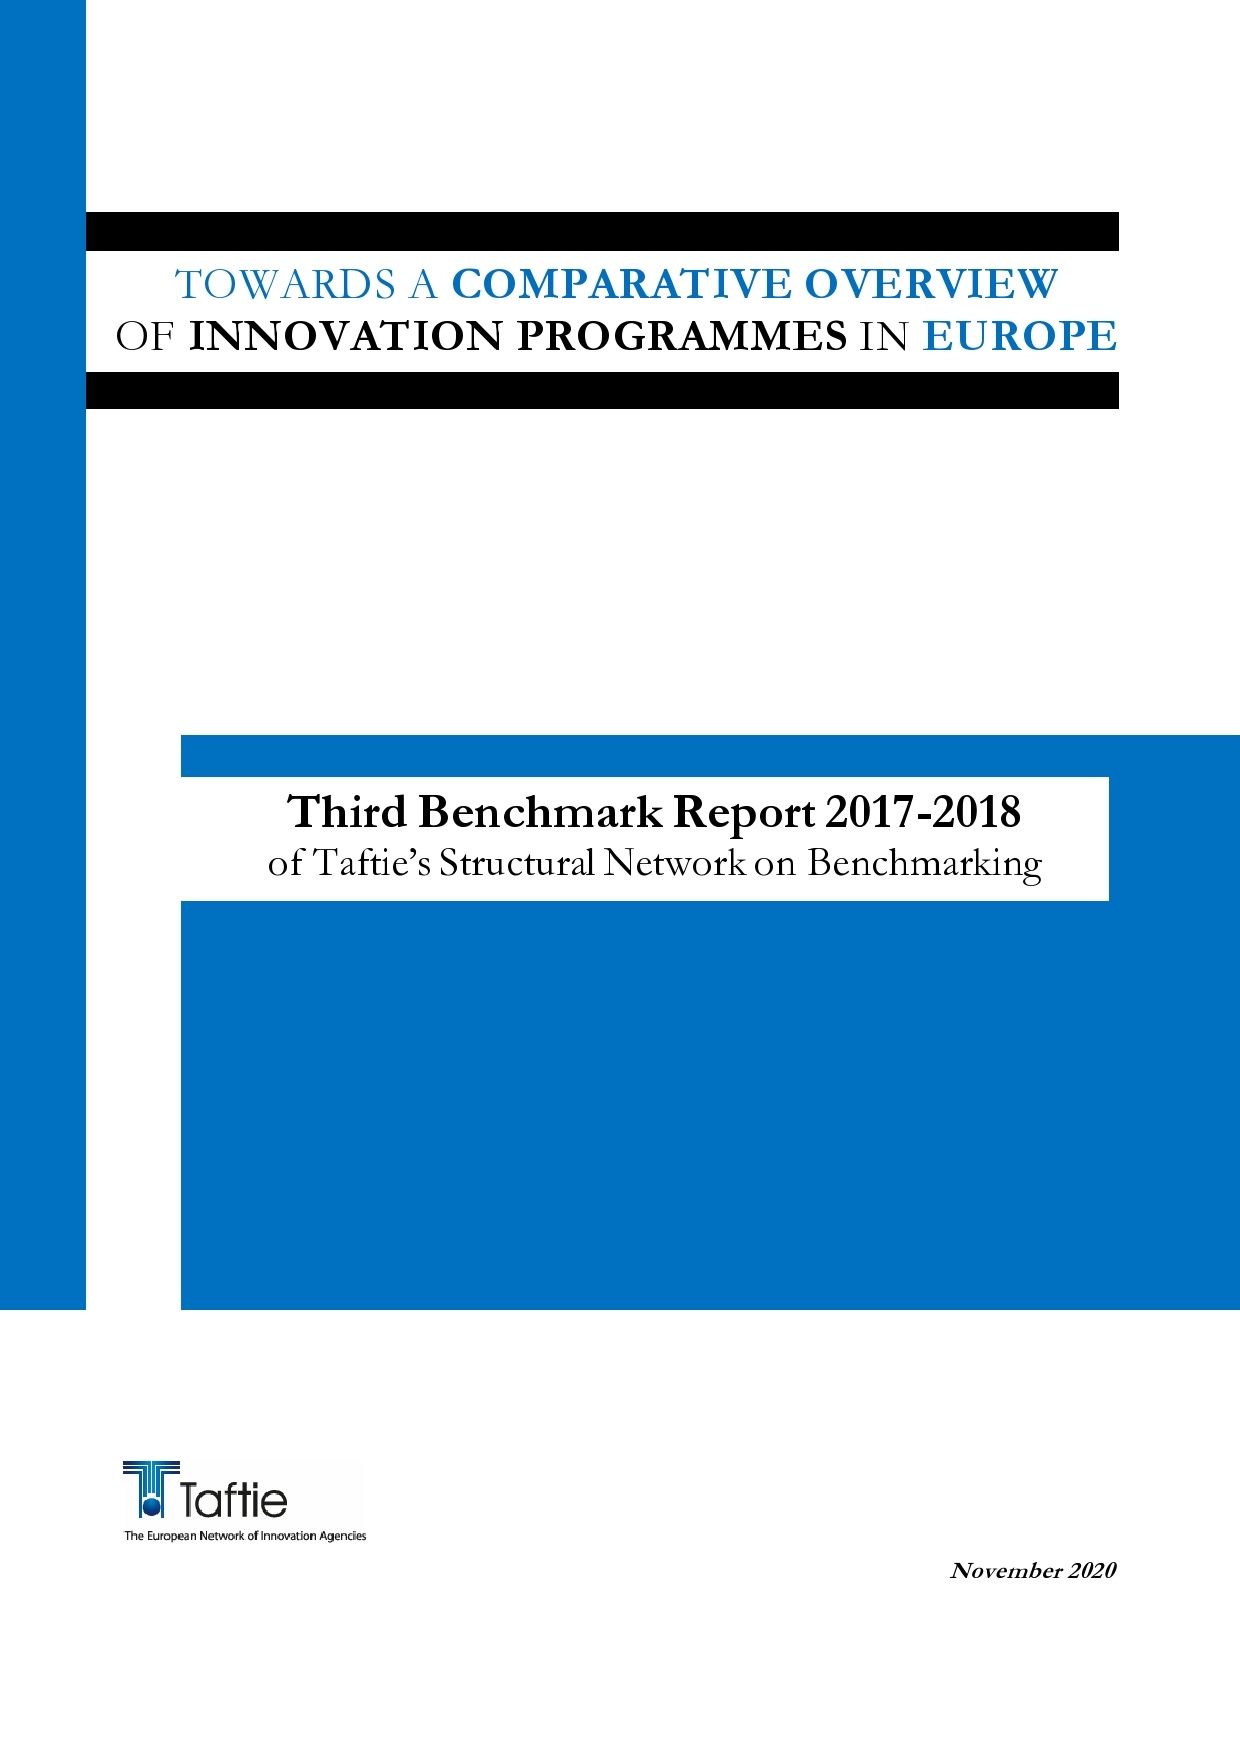 Upravljački odbor TAFTIE odobrio službenu objavu izvješća Benchmark Report 2020.